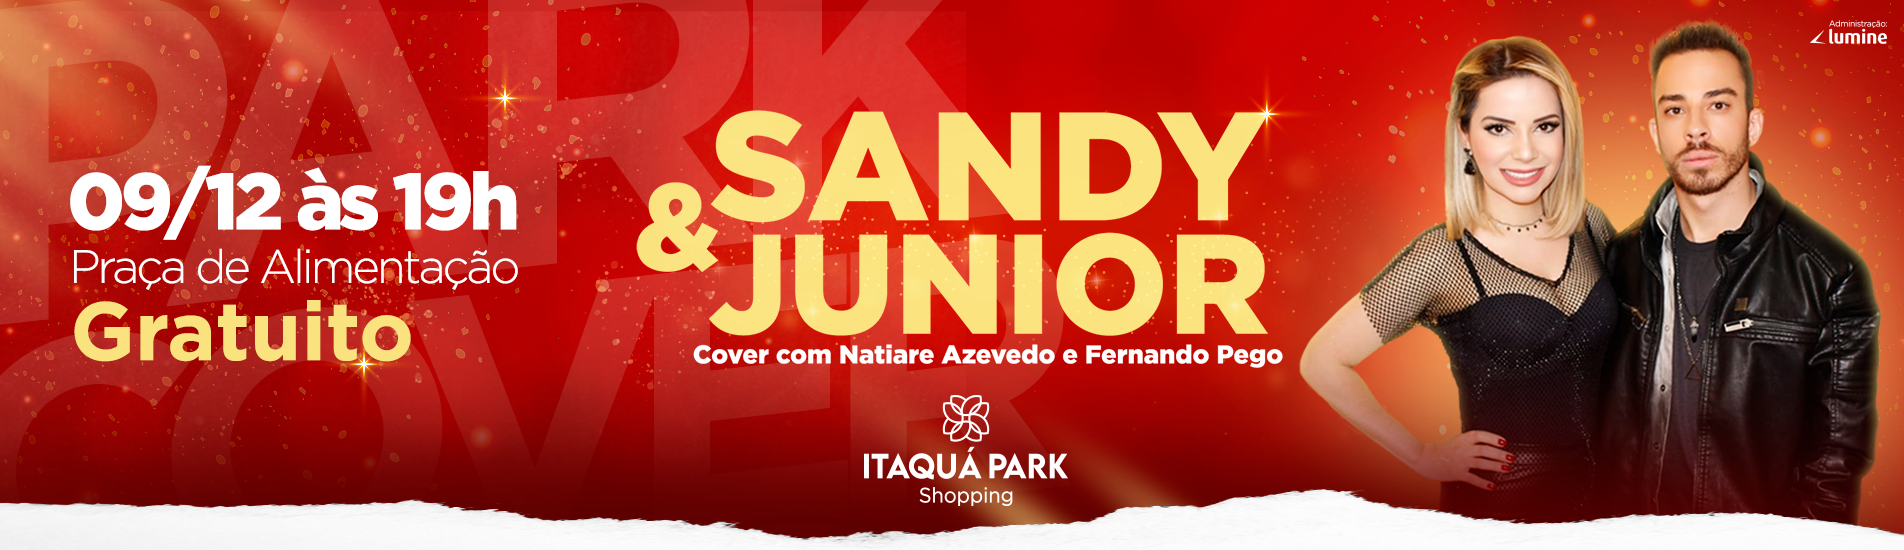 Itaquá Park Cover - Sandy e Junior